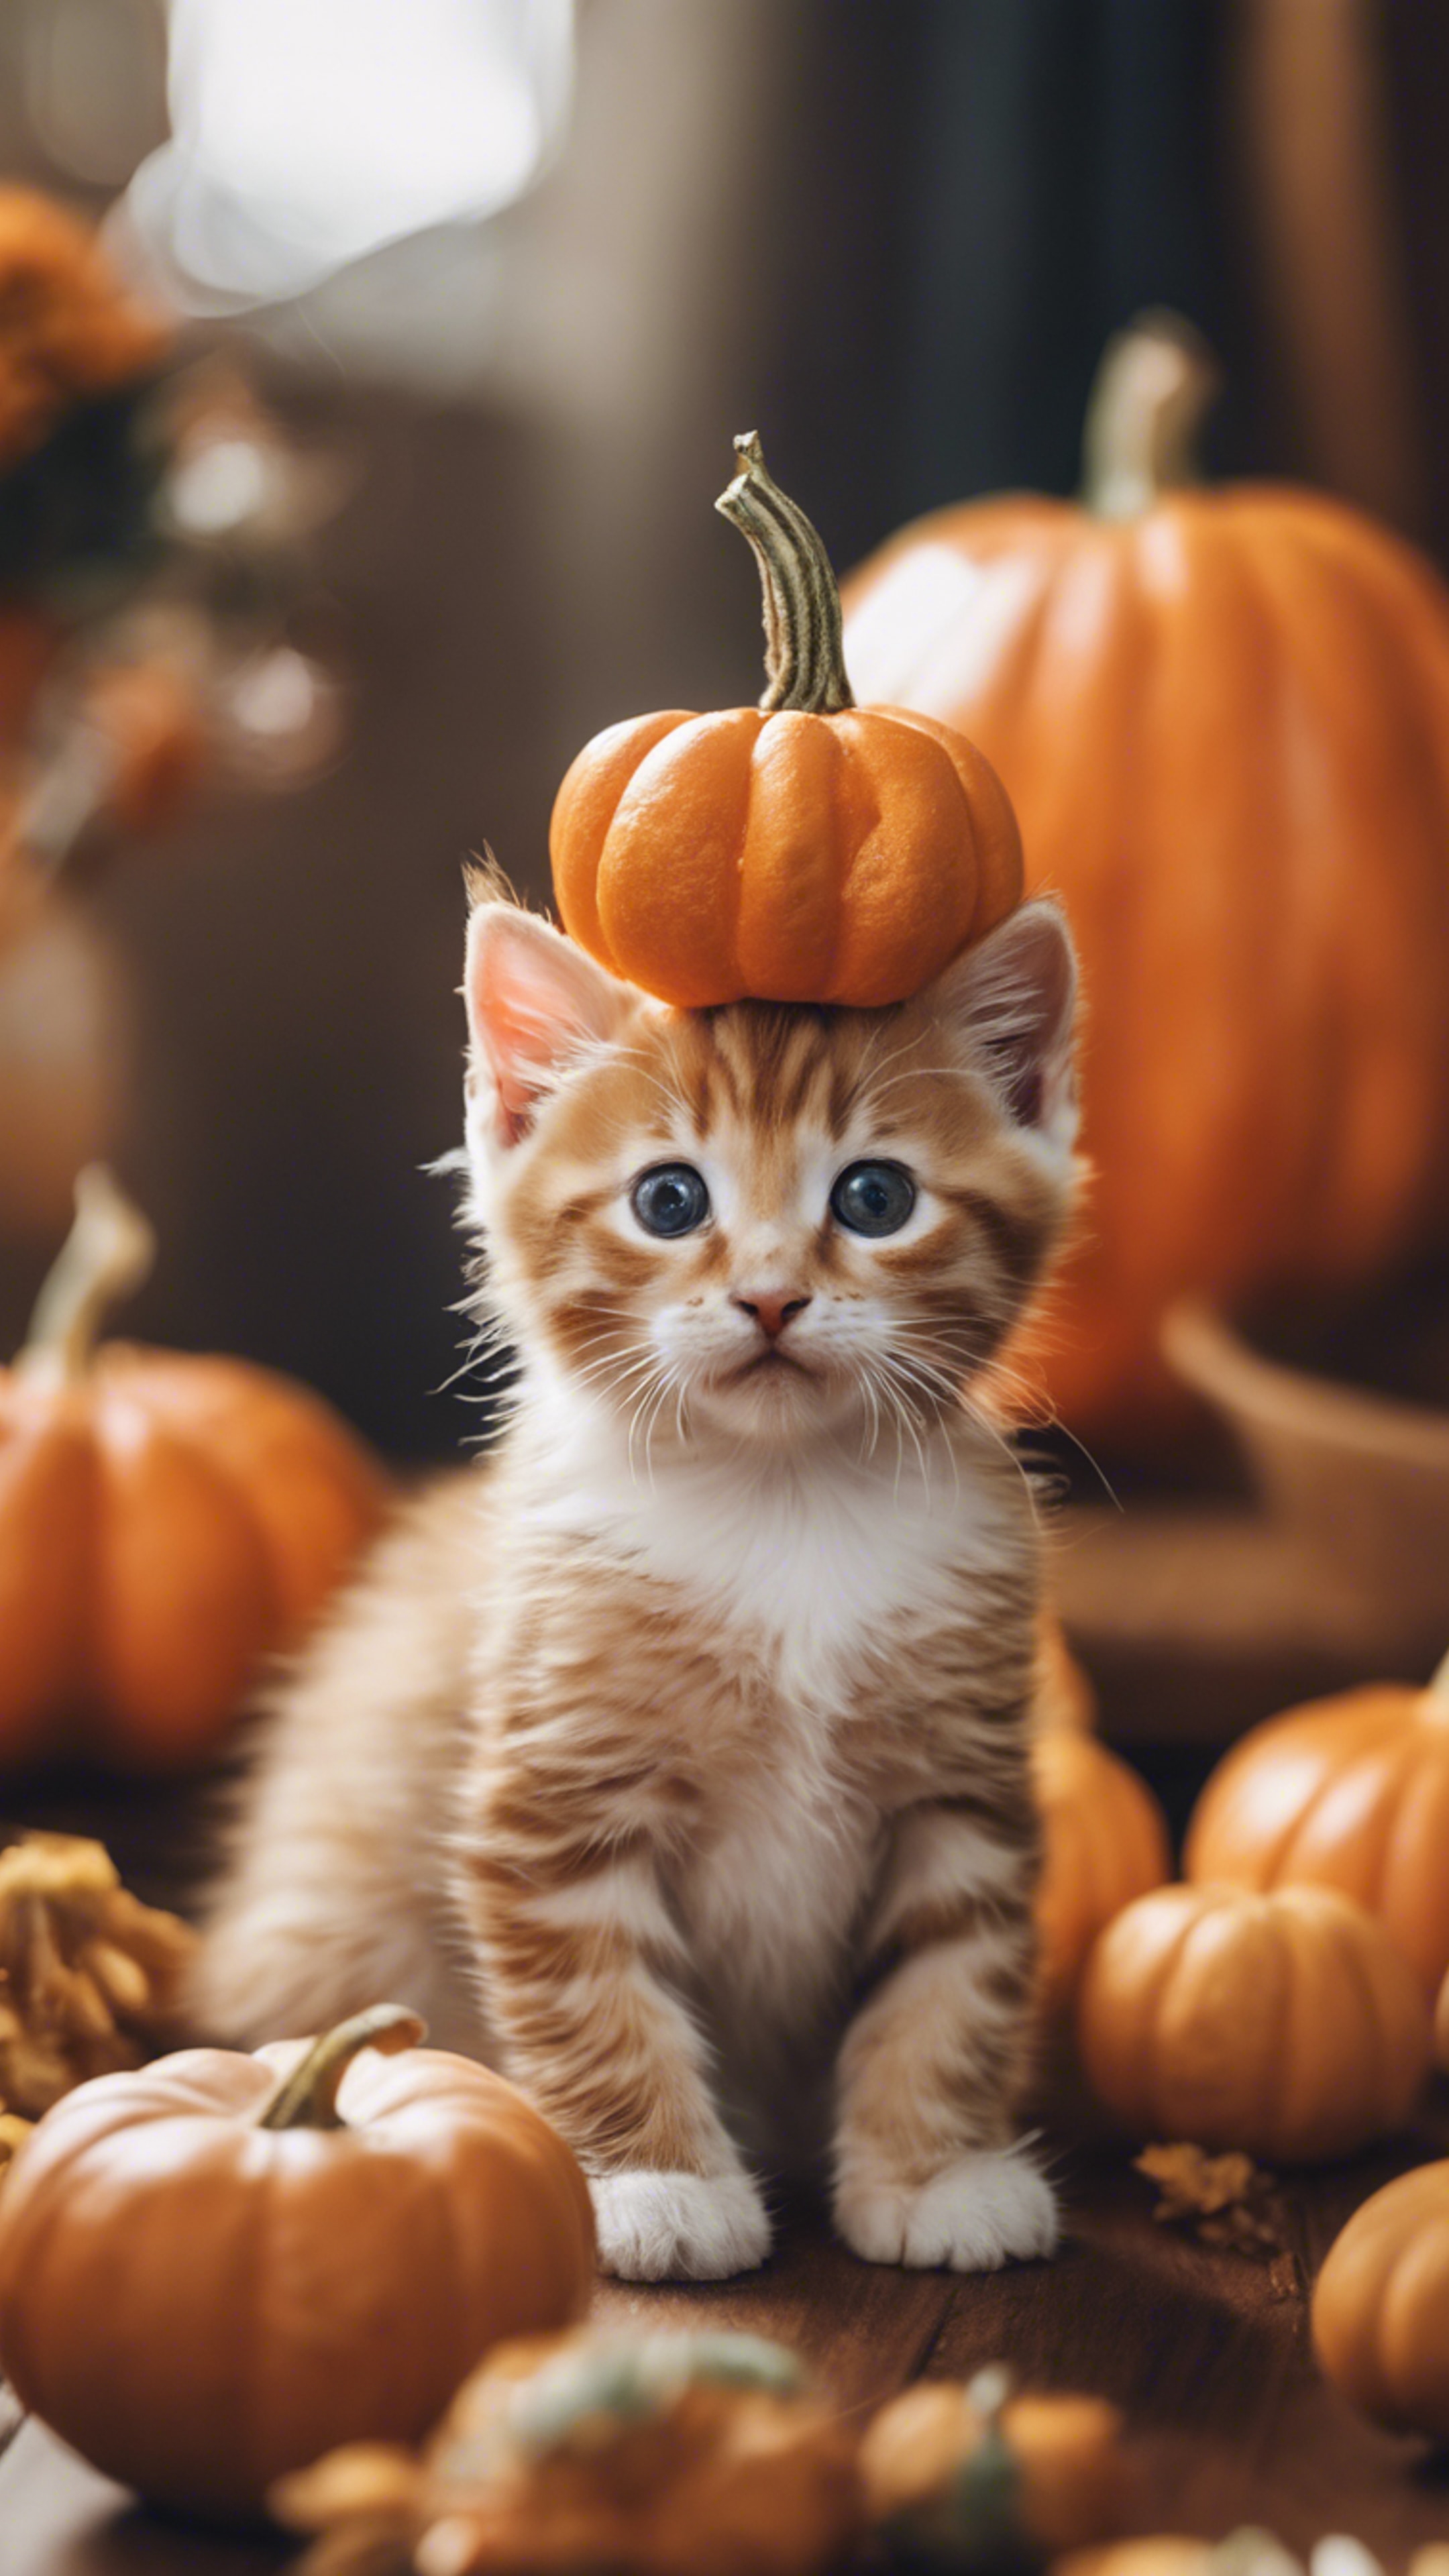 An orange tabby kitten dressed up as a tiny pumpkin for Halloween festivities. 벽지[a5205dadd28d41bcbdef]